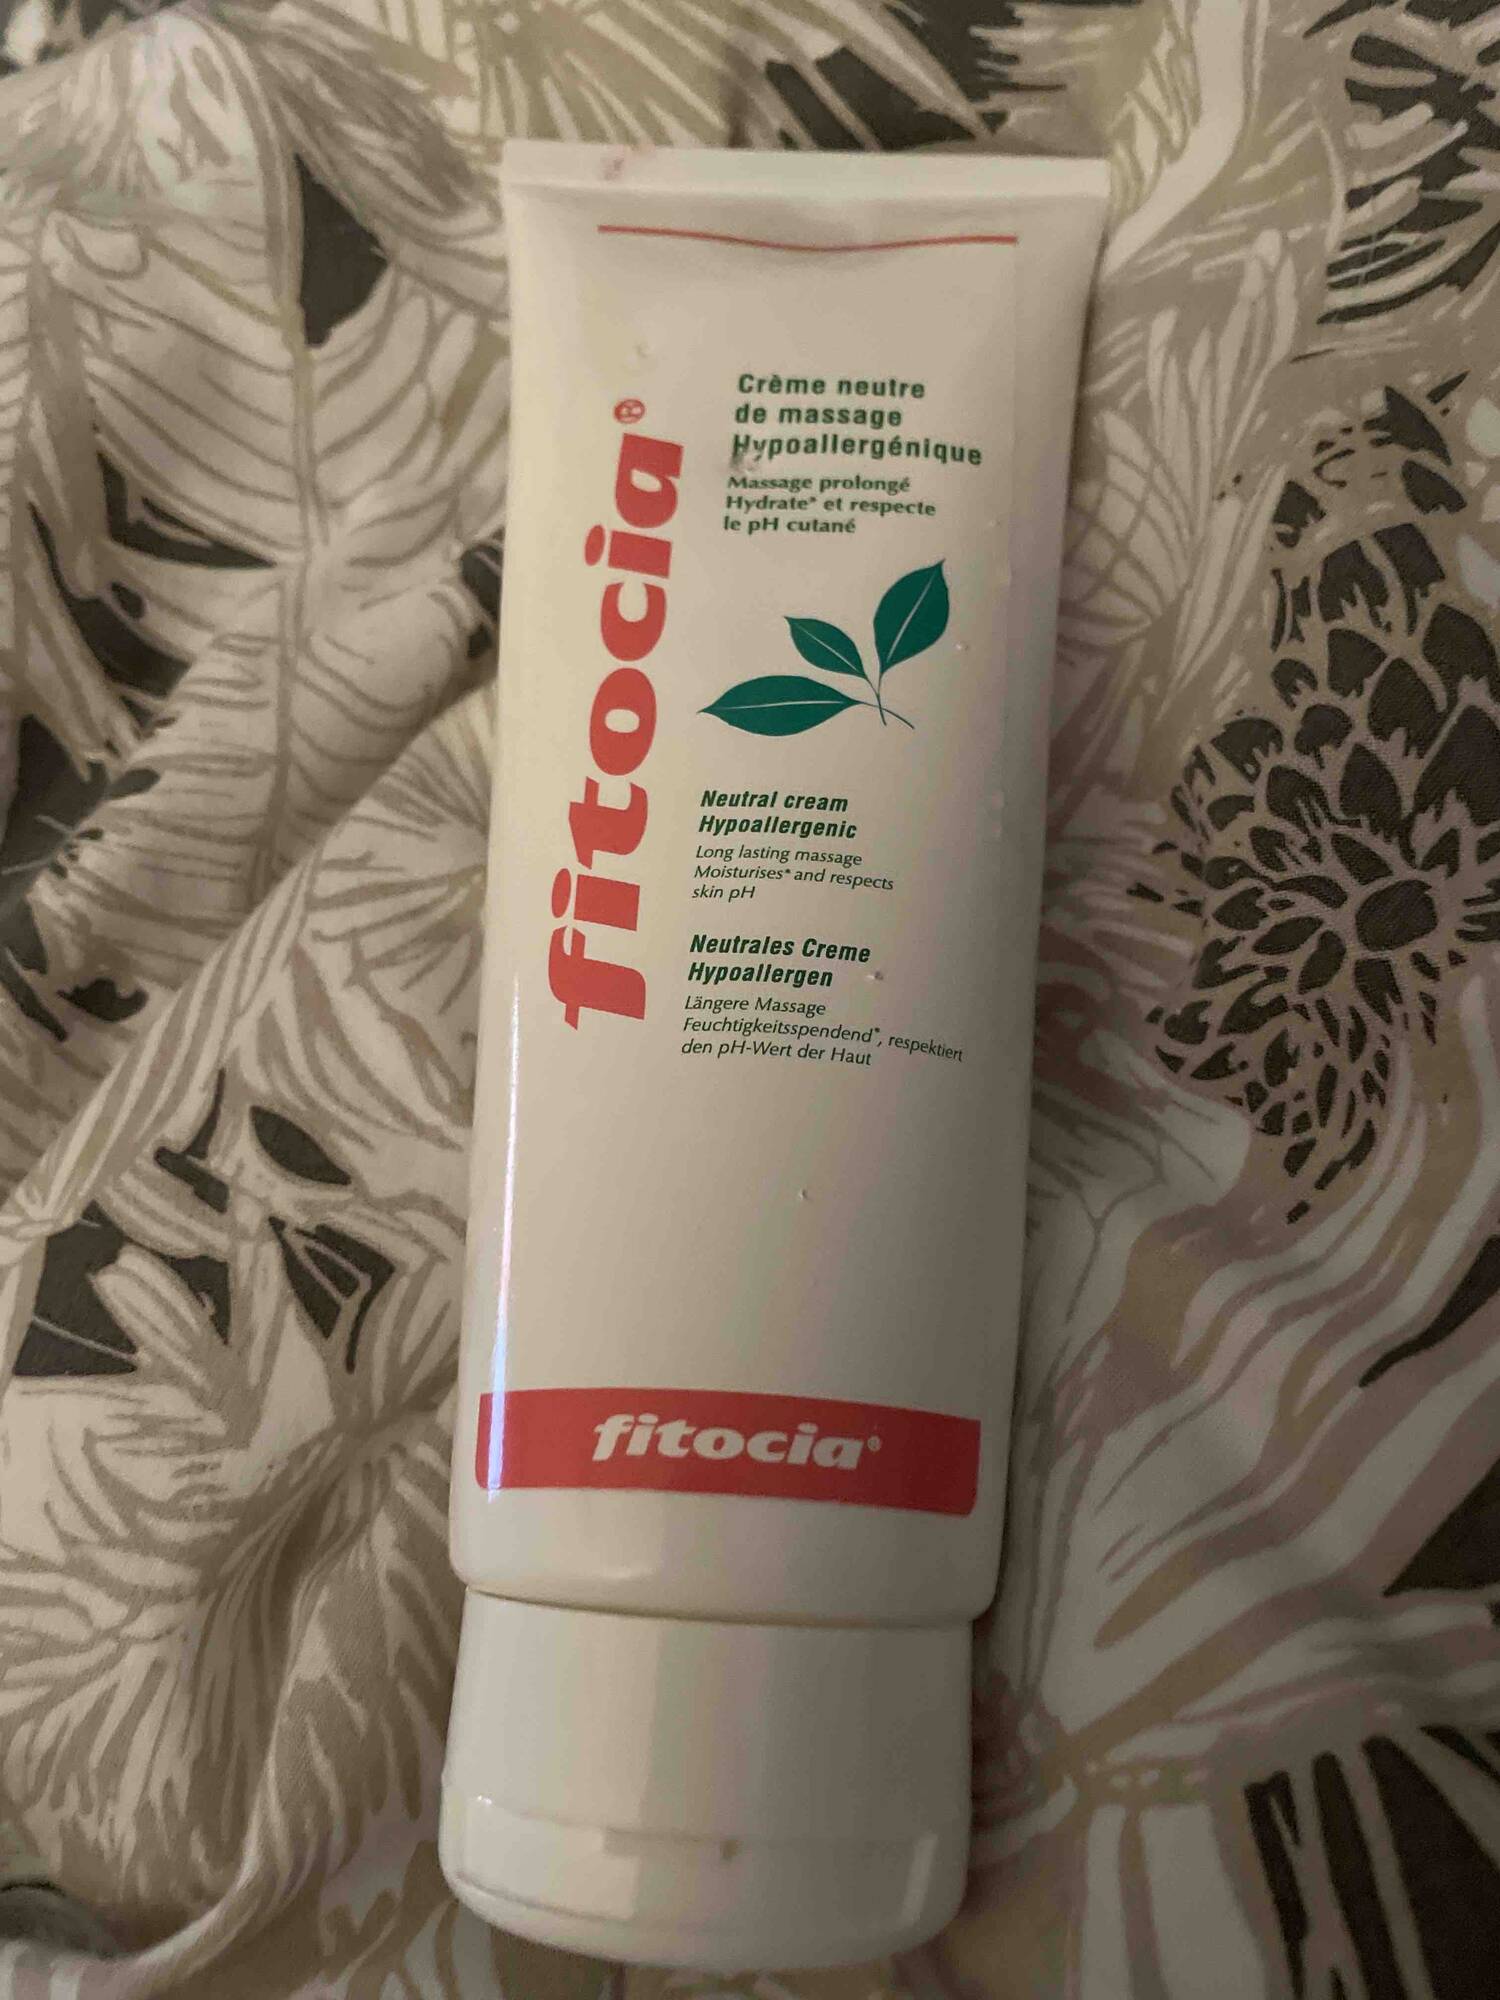 FITOCIA - Crème neutre de massage hypoallergénique